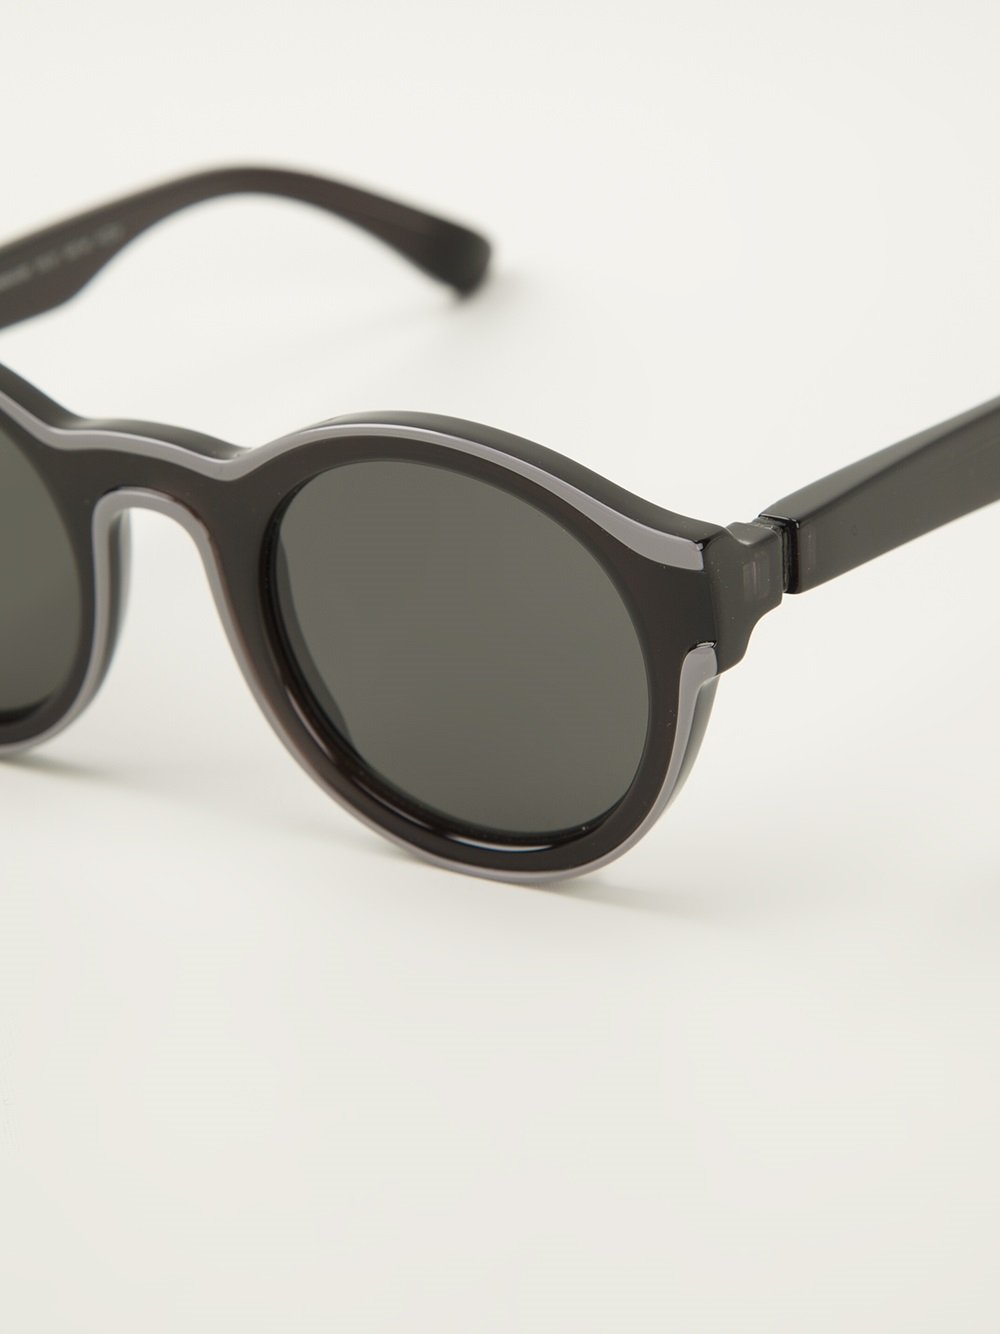 Lyst - Mykita 'dual' Sunglasses in Black for Men